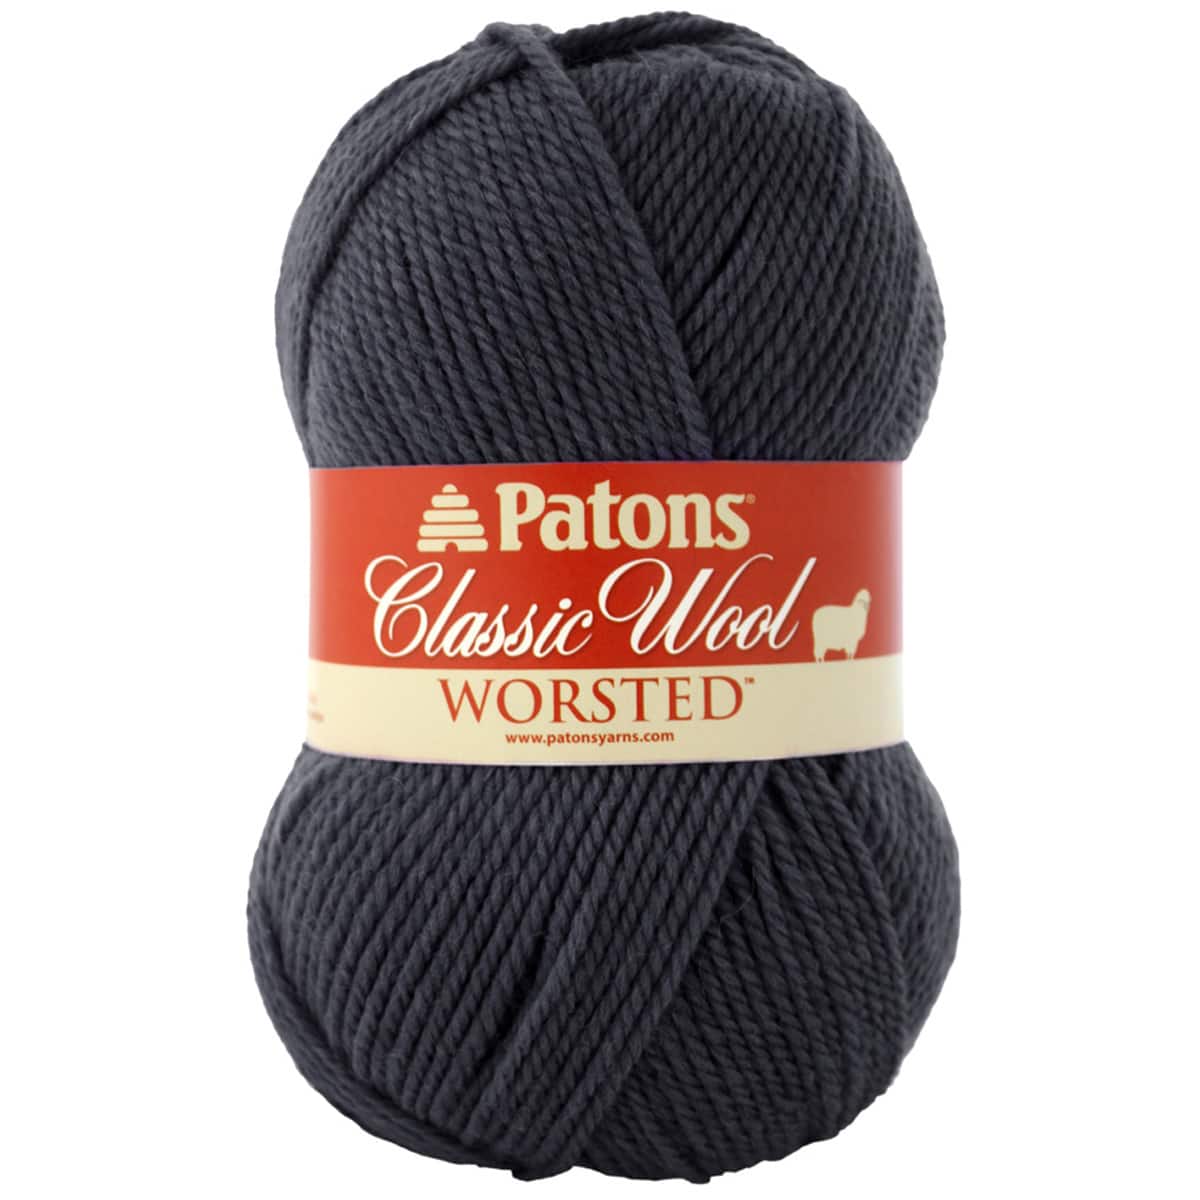 100 wool yarn for felting